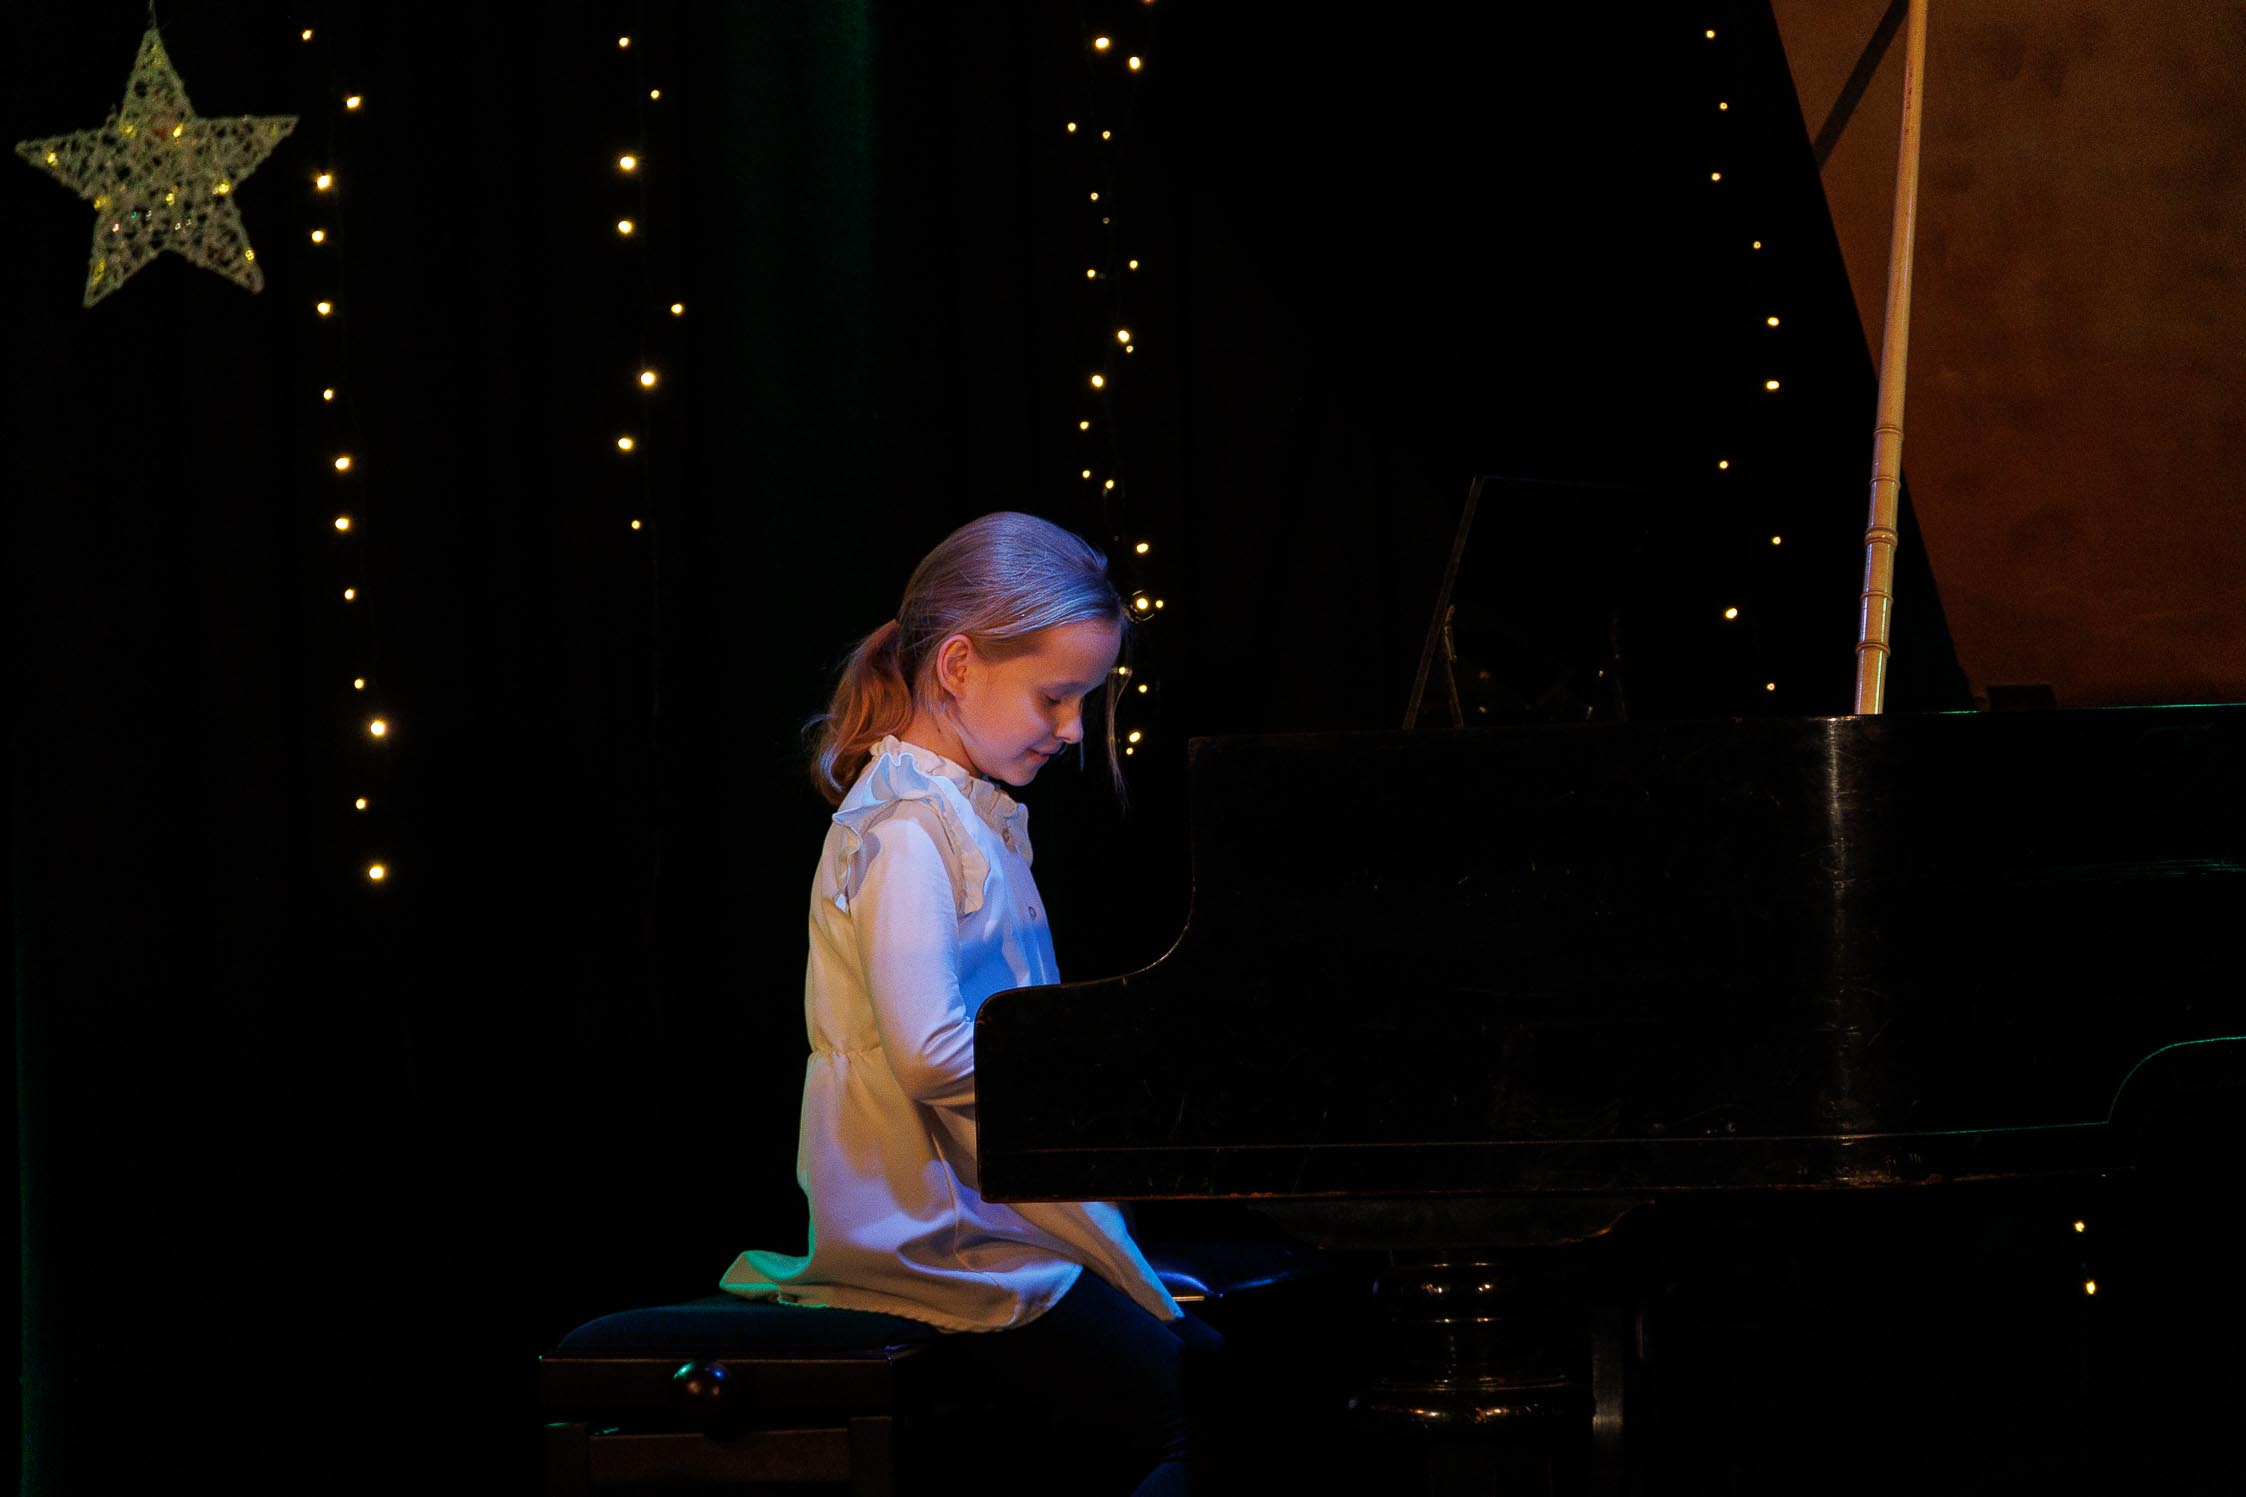 dziewczynka siedzi przy fortepianie i się uśmiecha, w tle świąteczna dekoracja